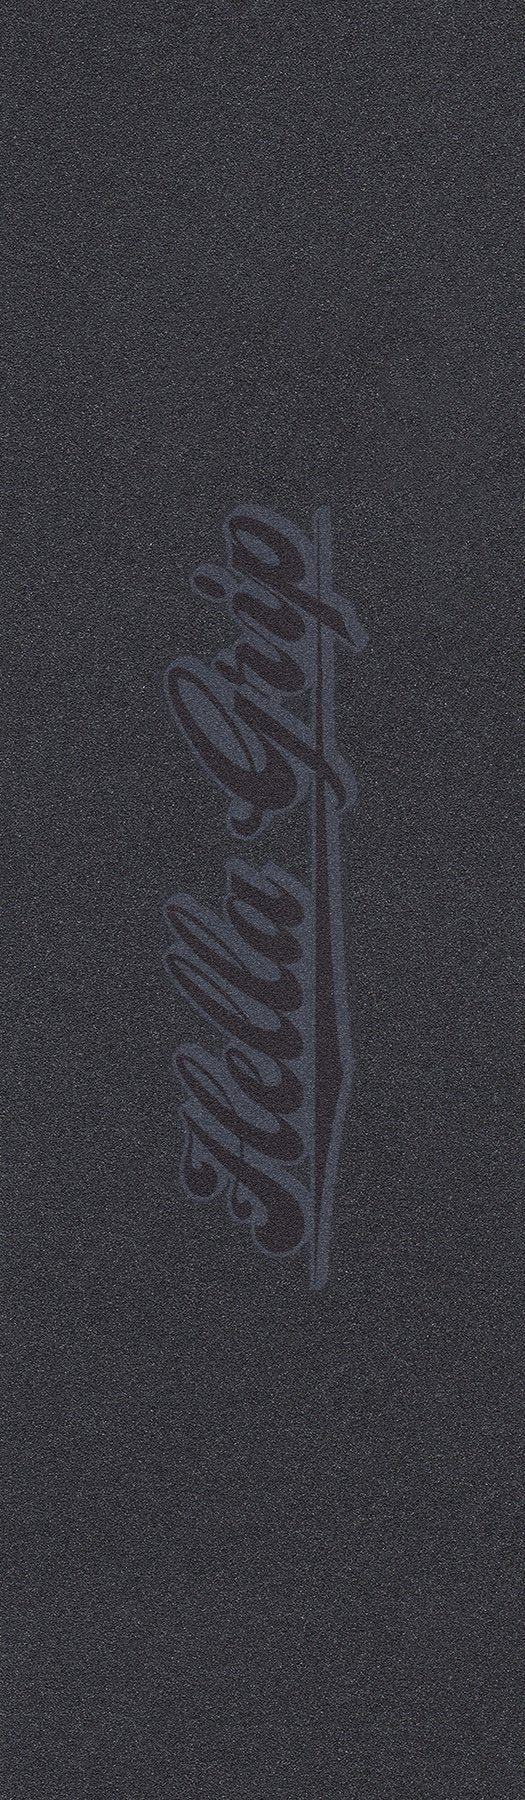 signature logo tape